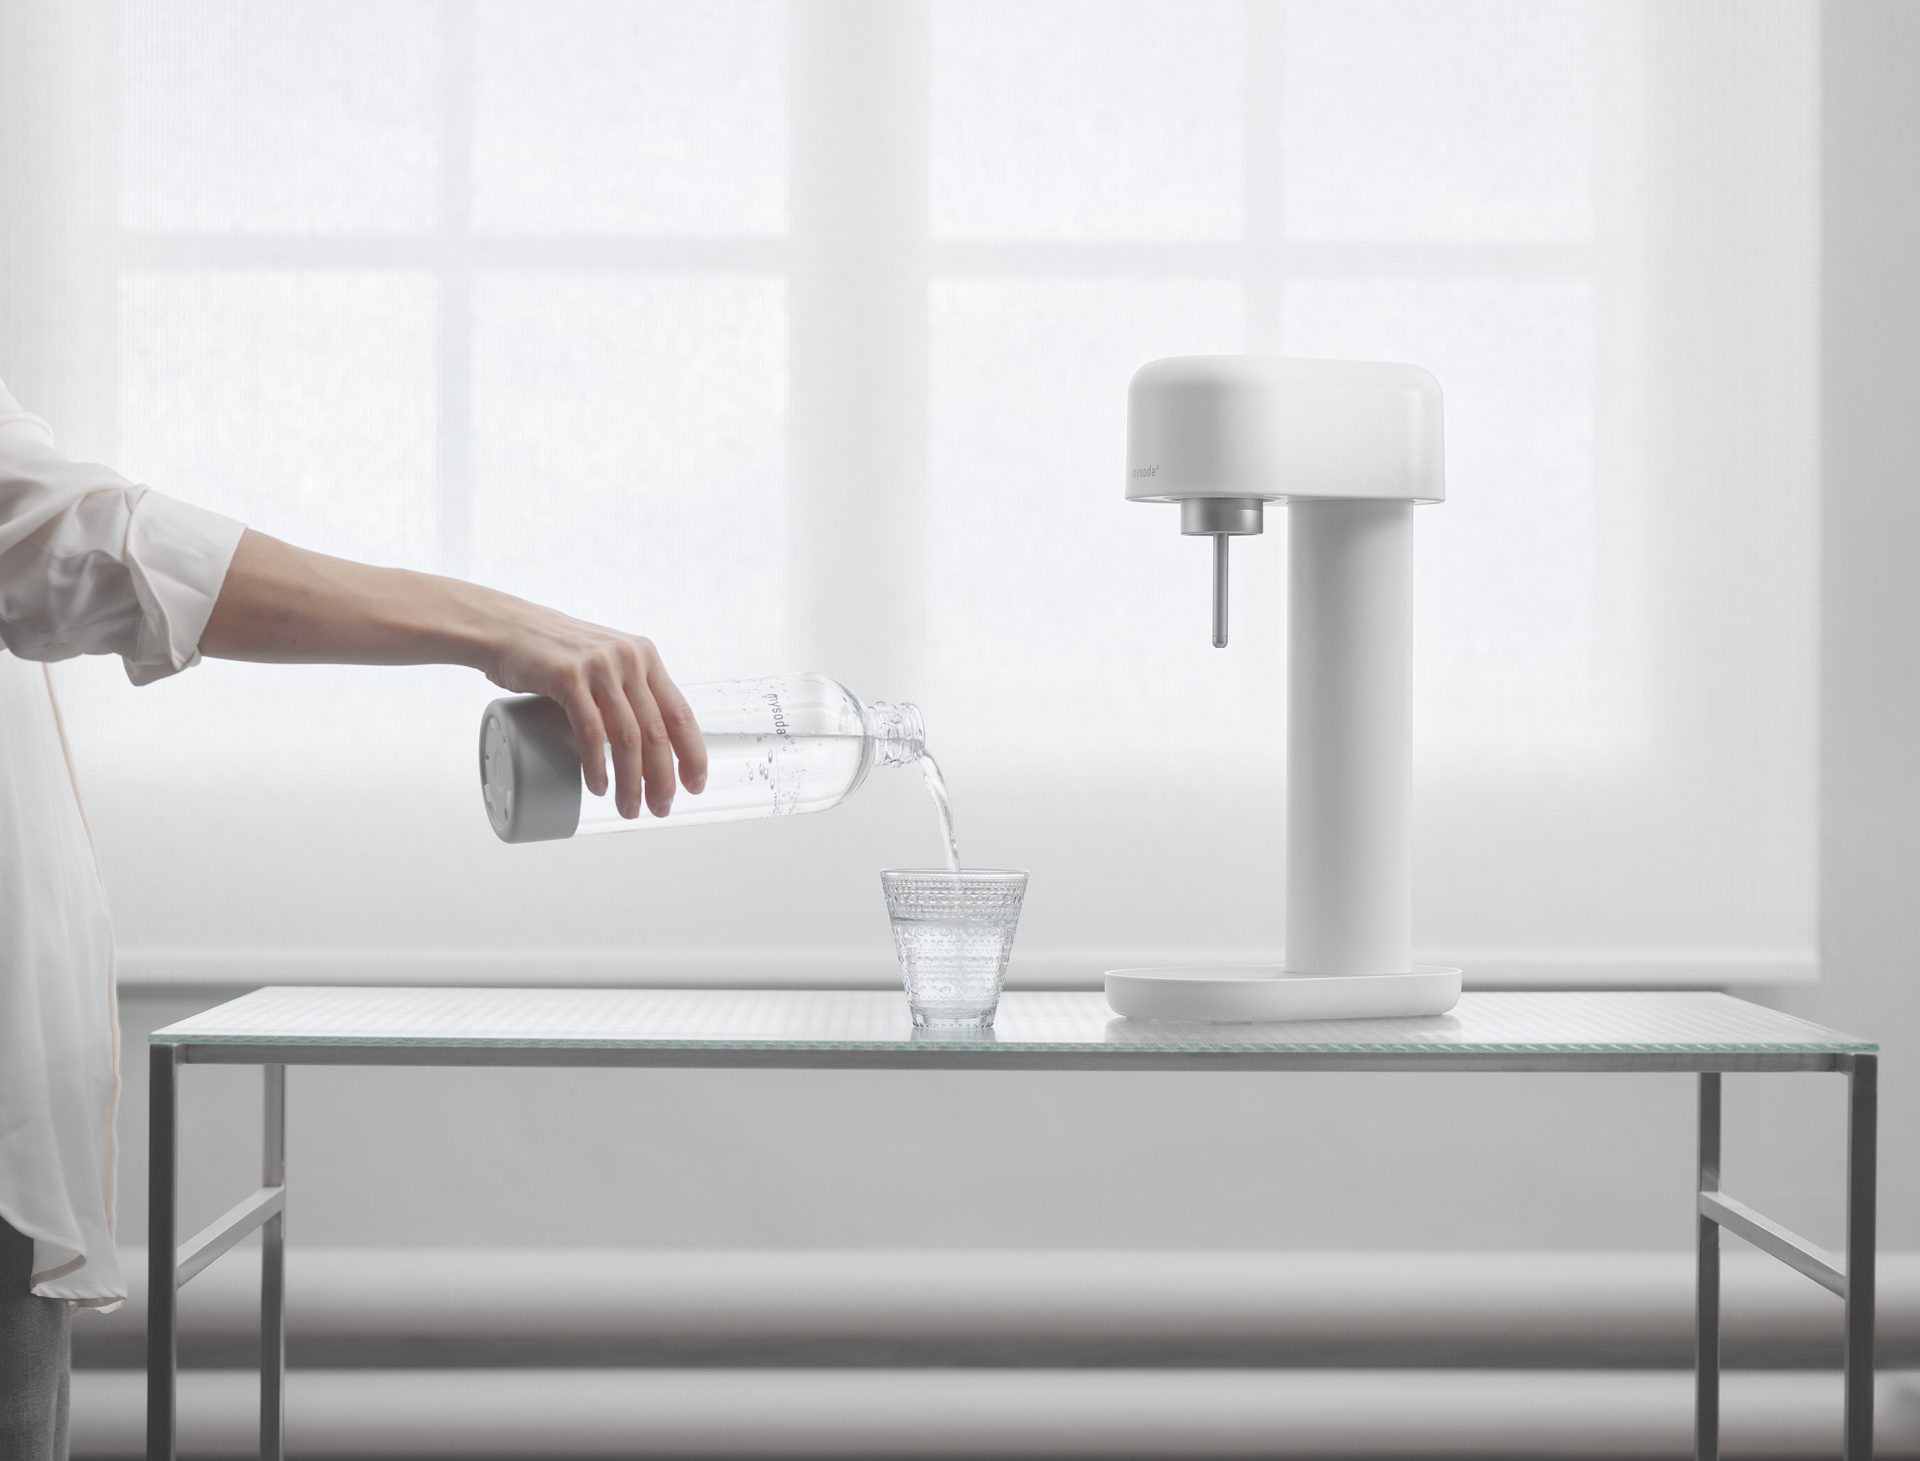 Una macchina per acqua frizzante bianco-argento Ruby 2 davanti a una finestra. Una mano che versa un bicchiere di acqua frizzante.